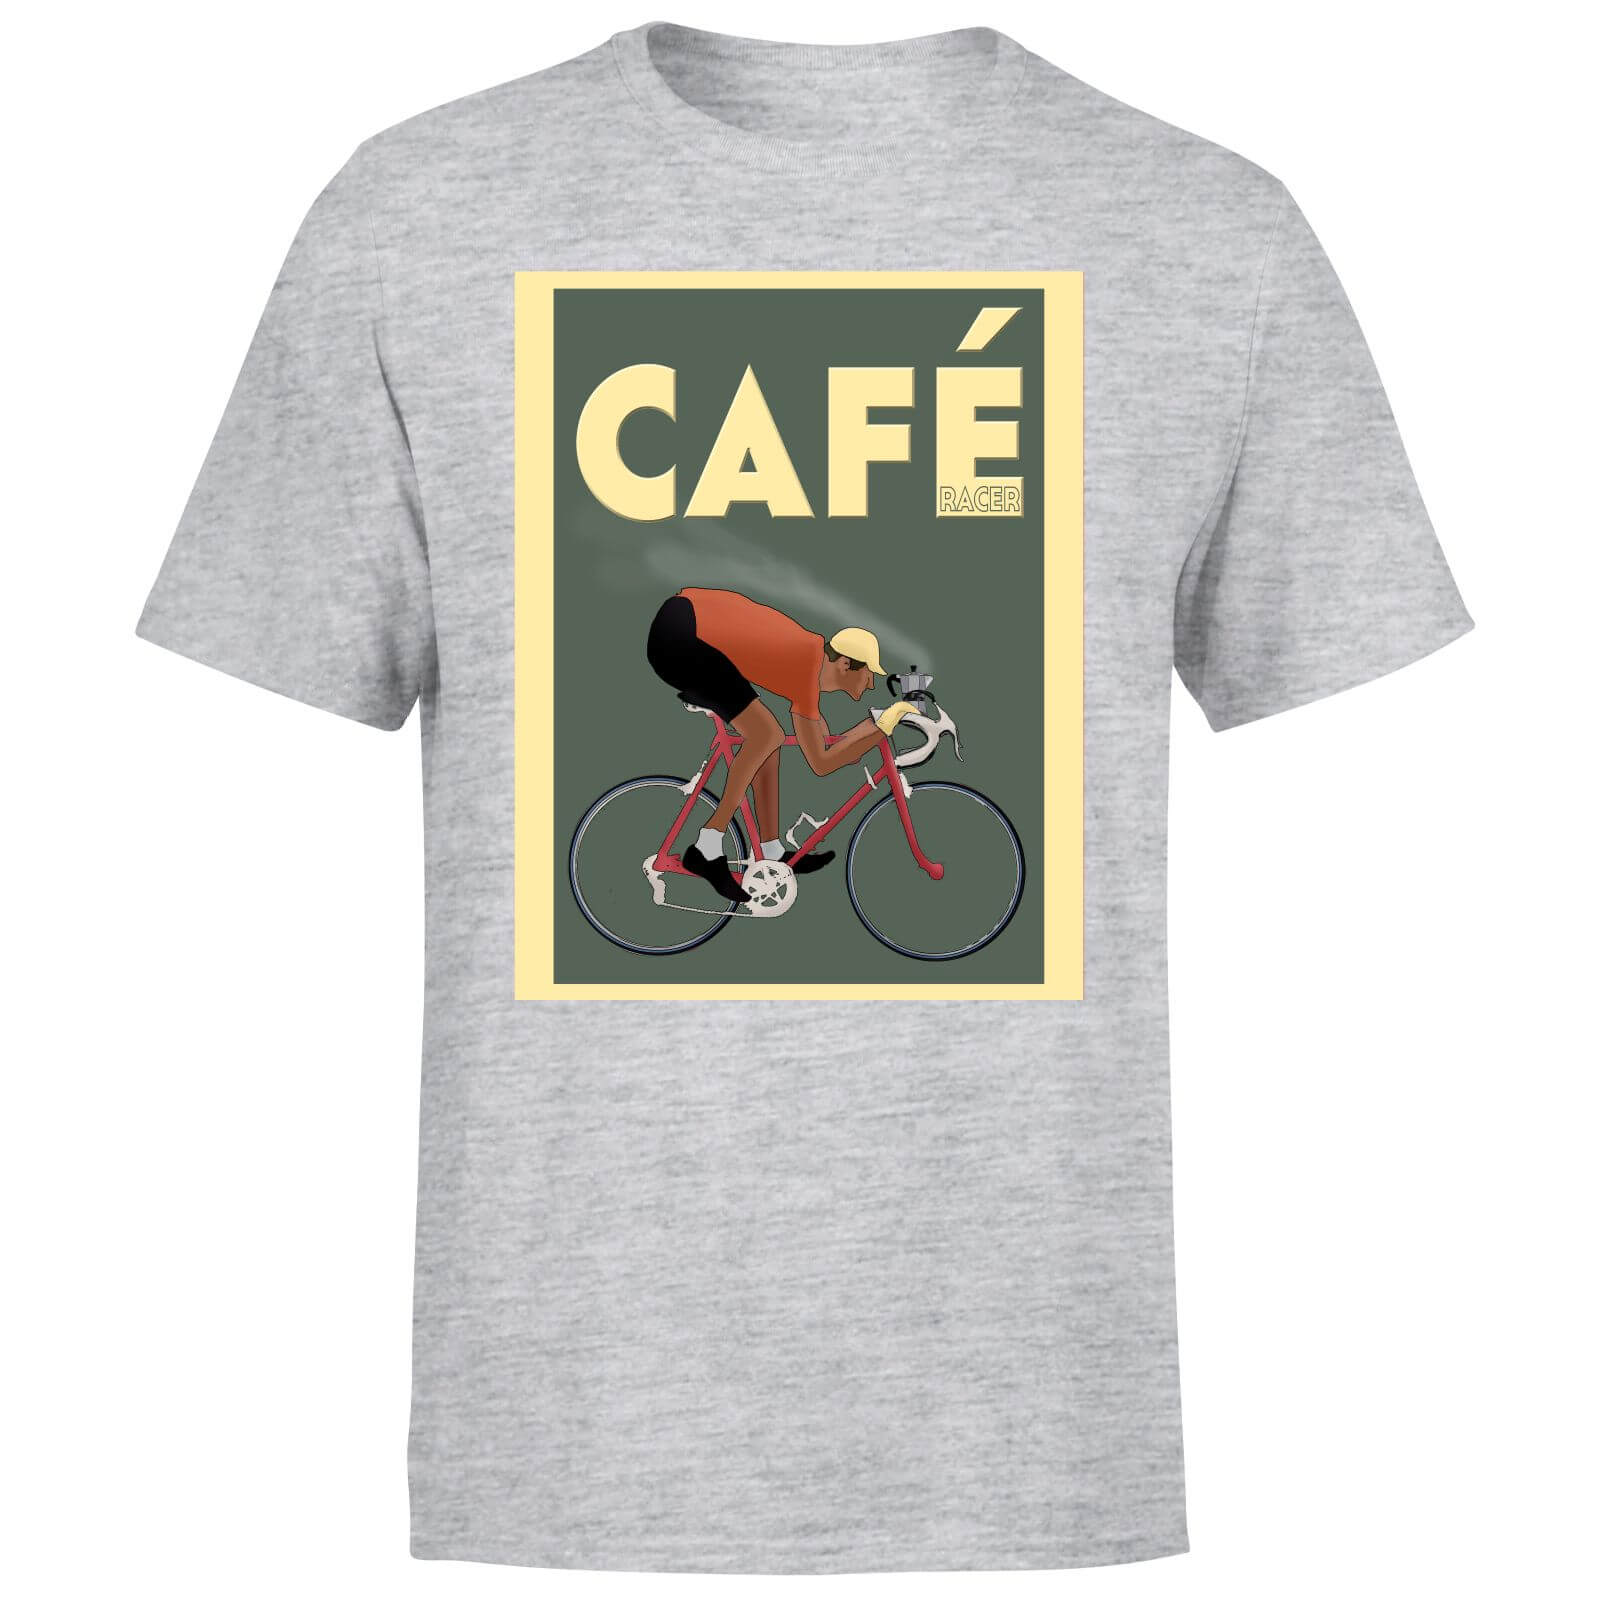 Cafe Racer Men's T-Shirt - Grey - XL - Grey